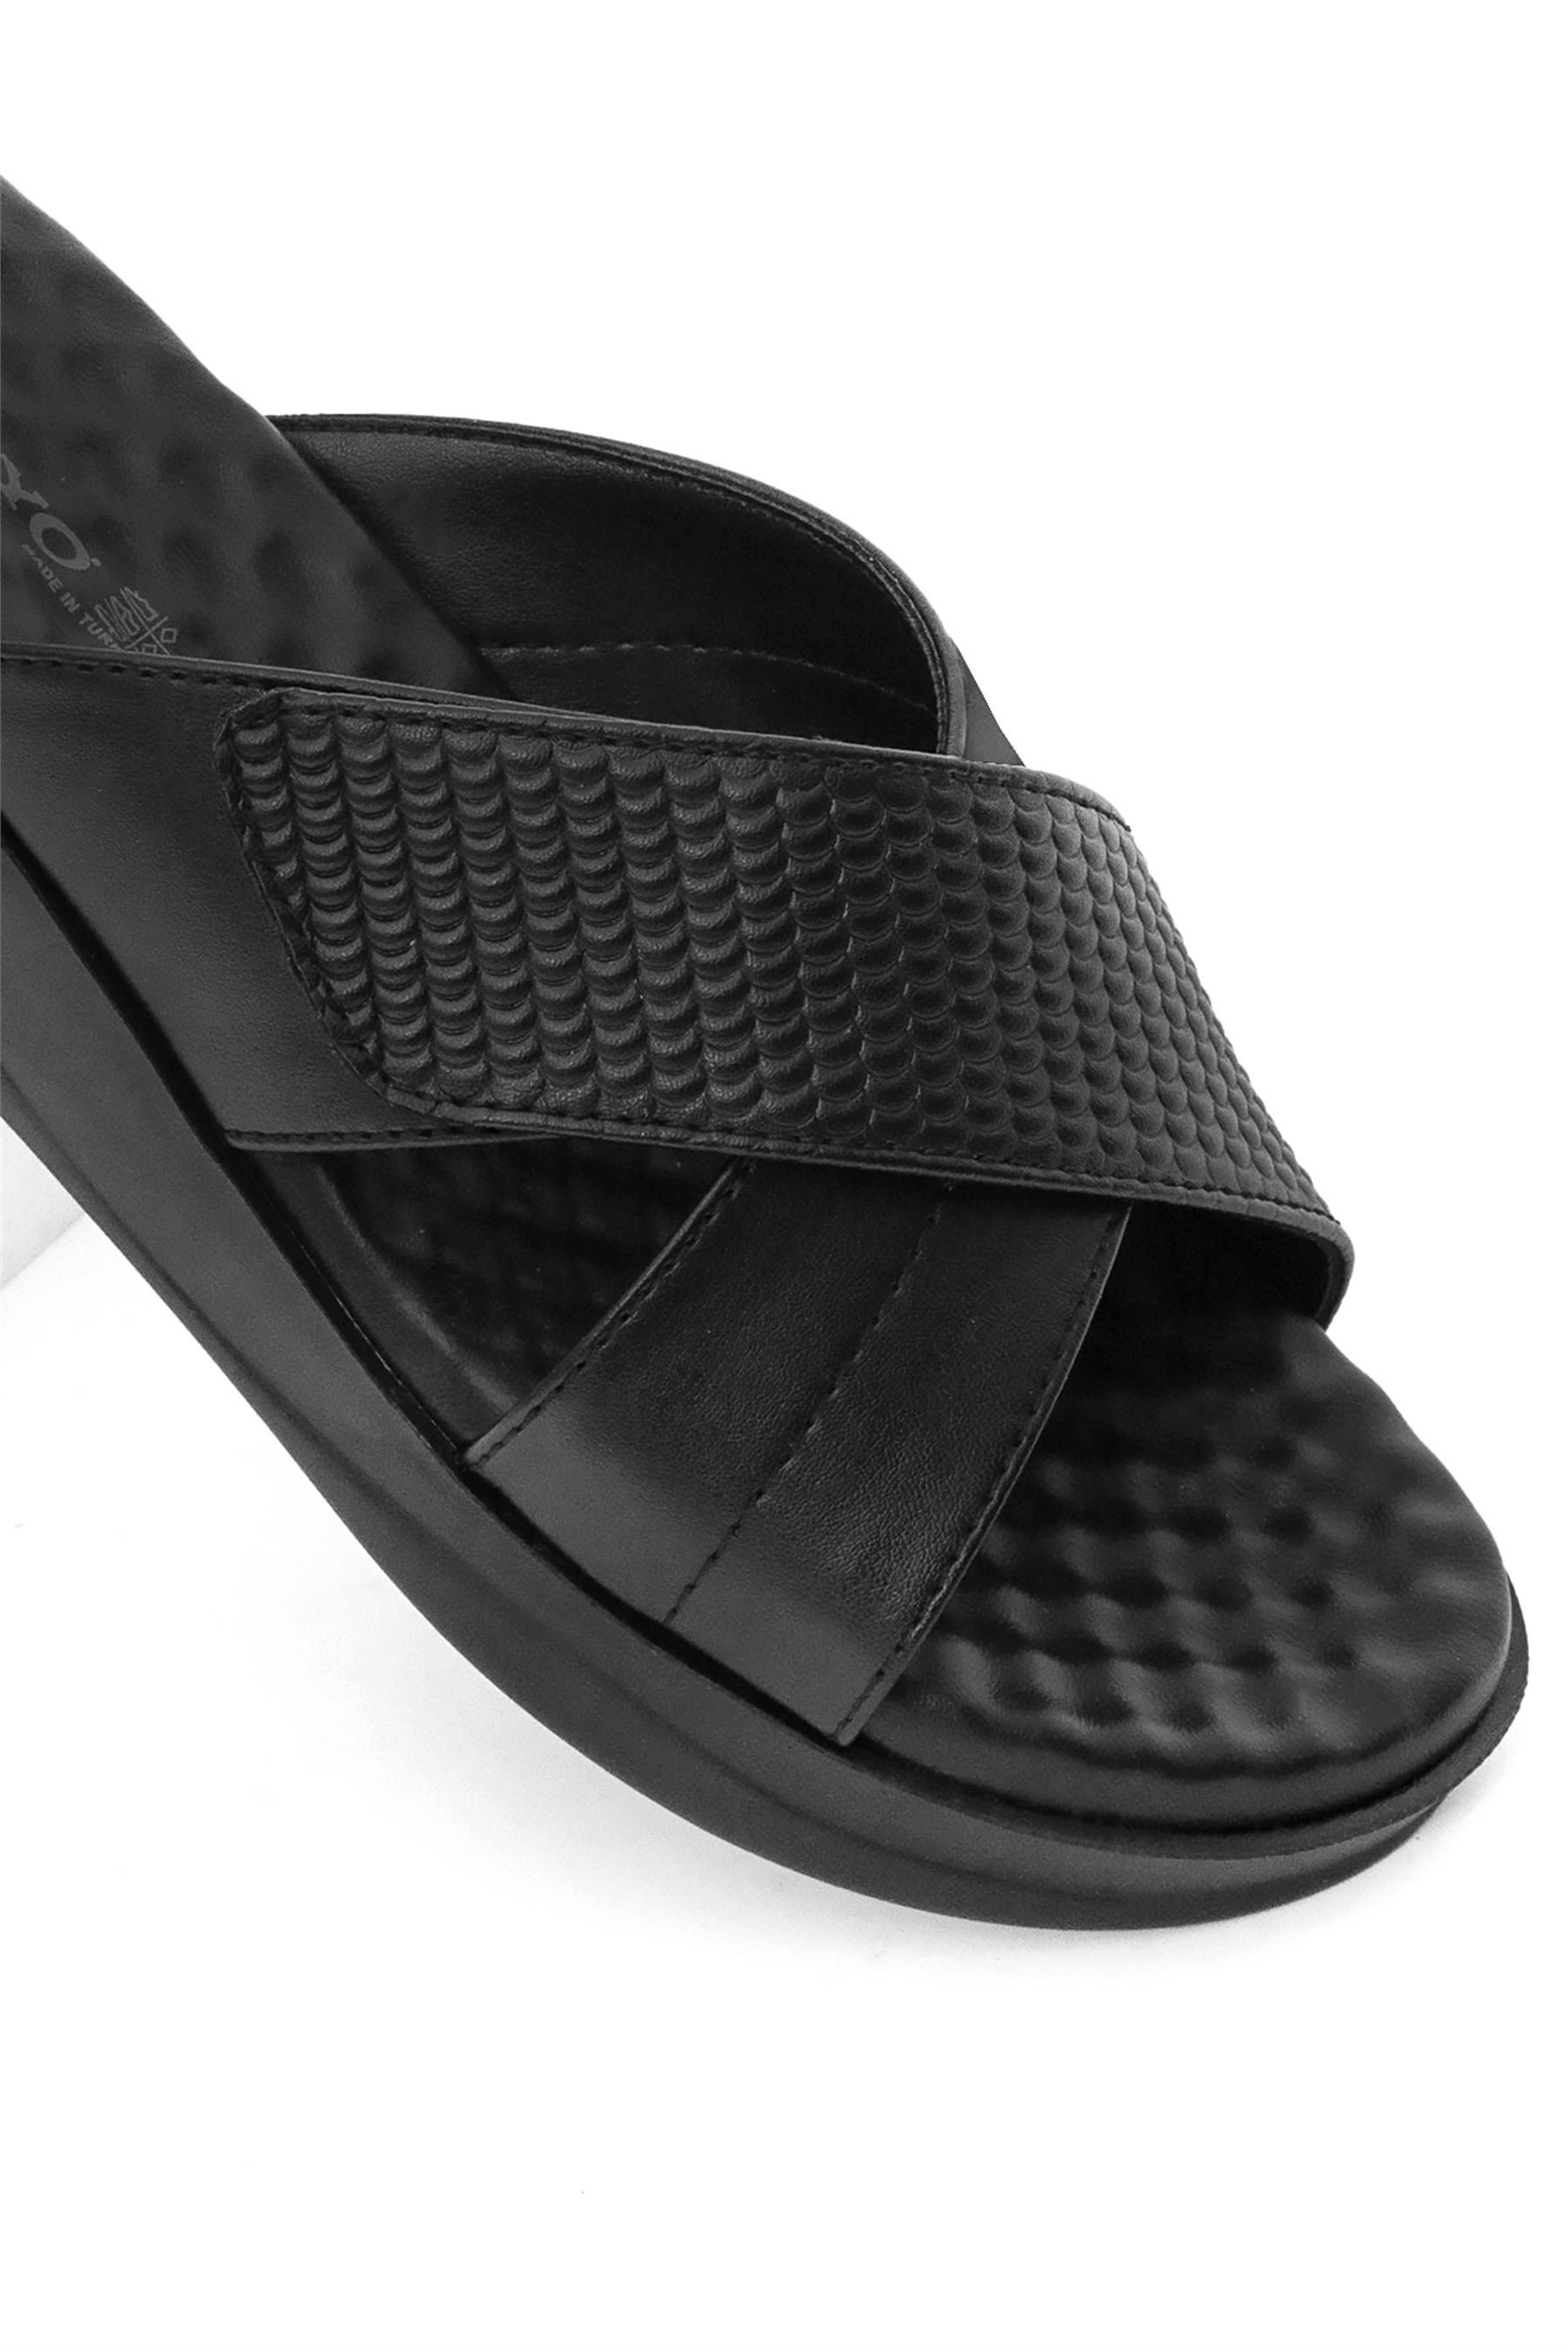 Ceyo 9975-10 Kadın Terlik Siyah - Ayakkabı Fuarı Elit